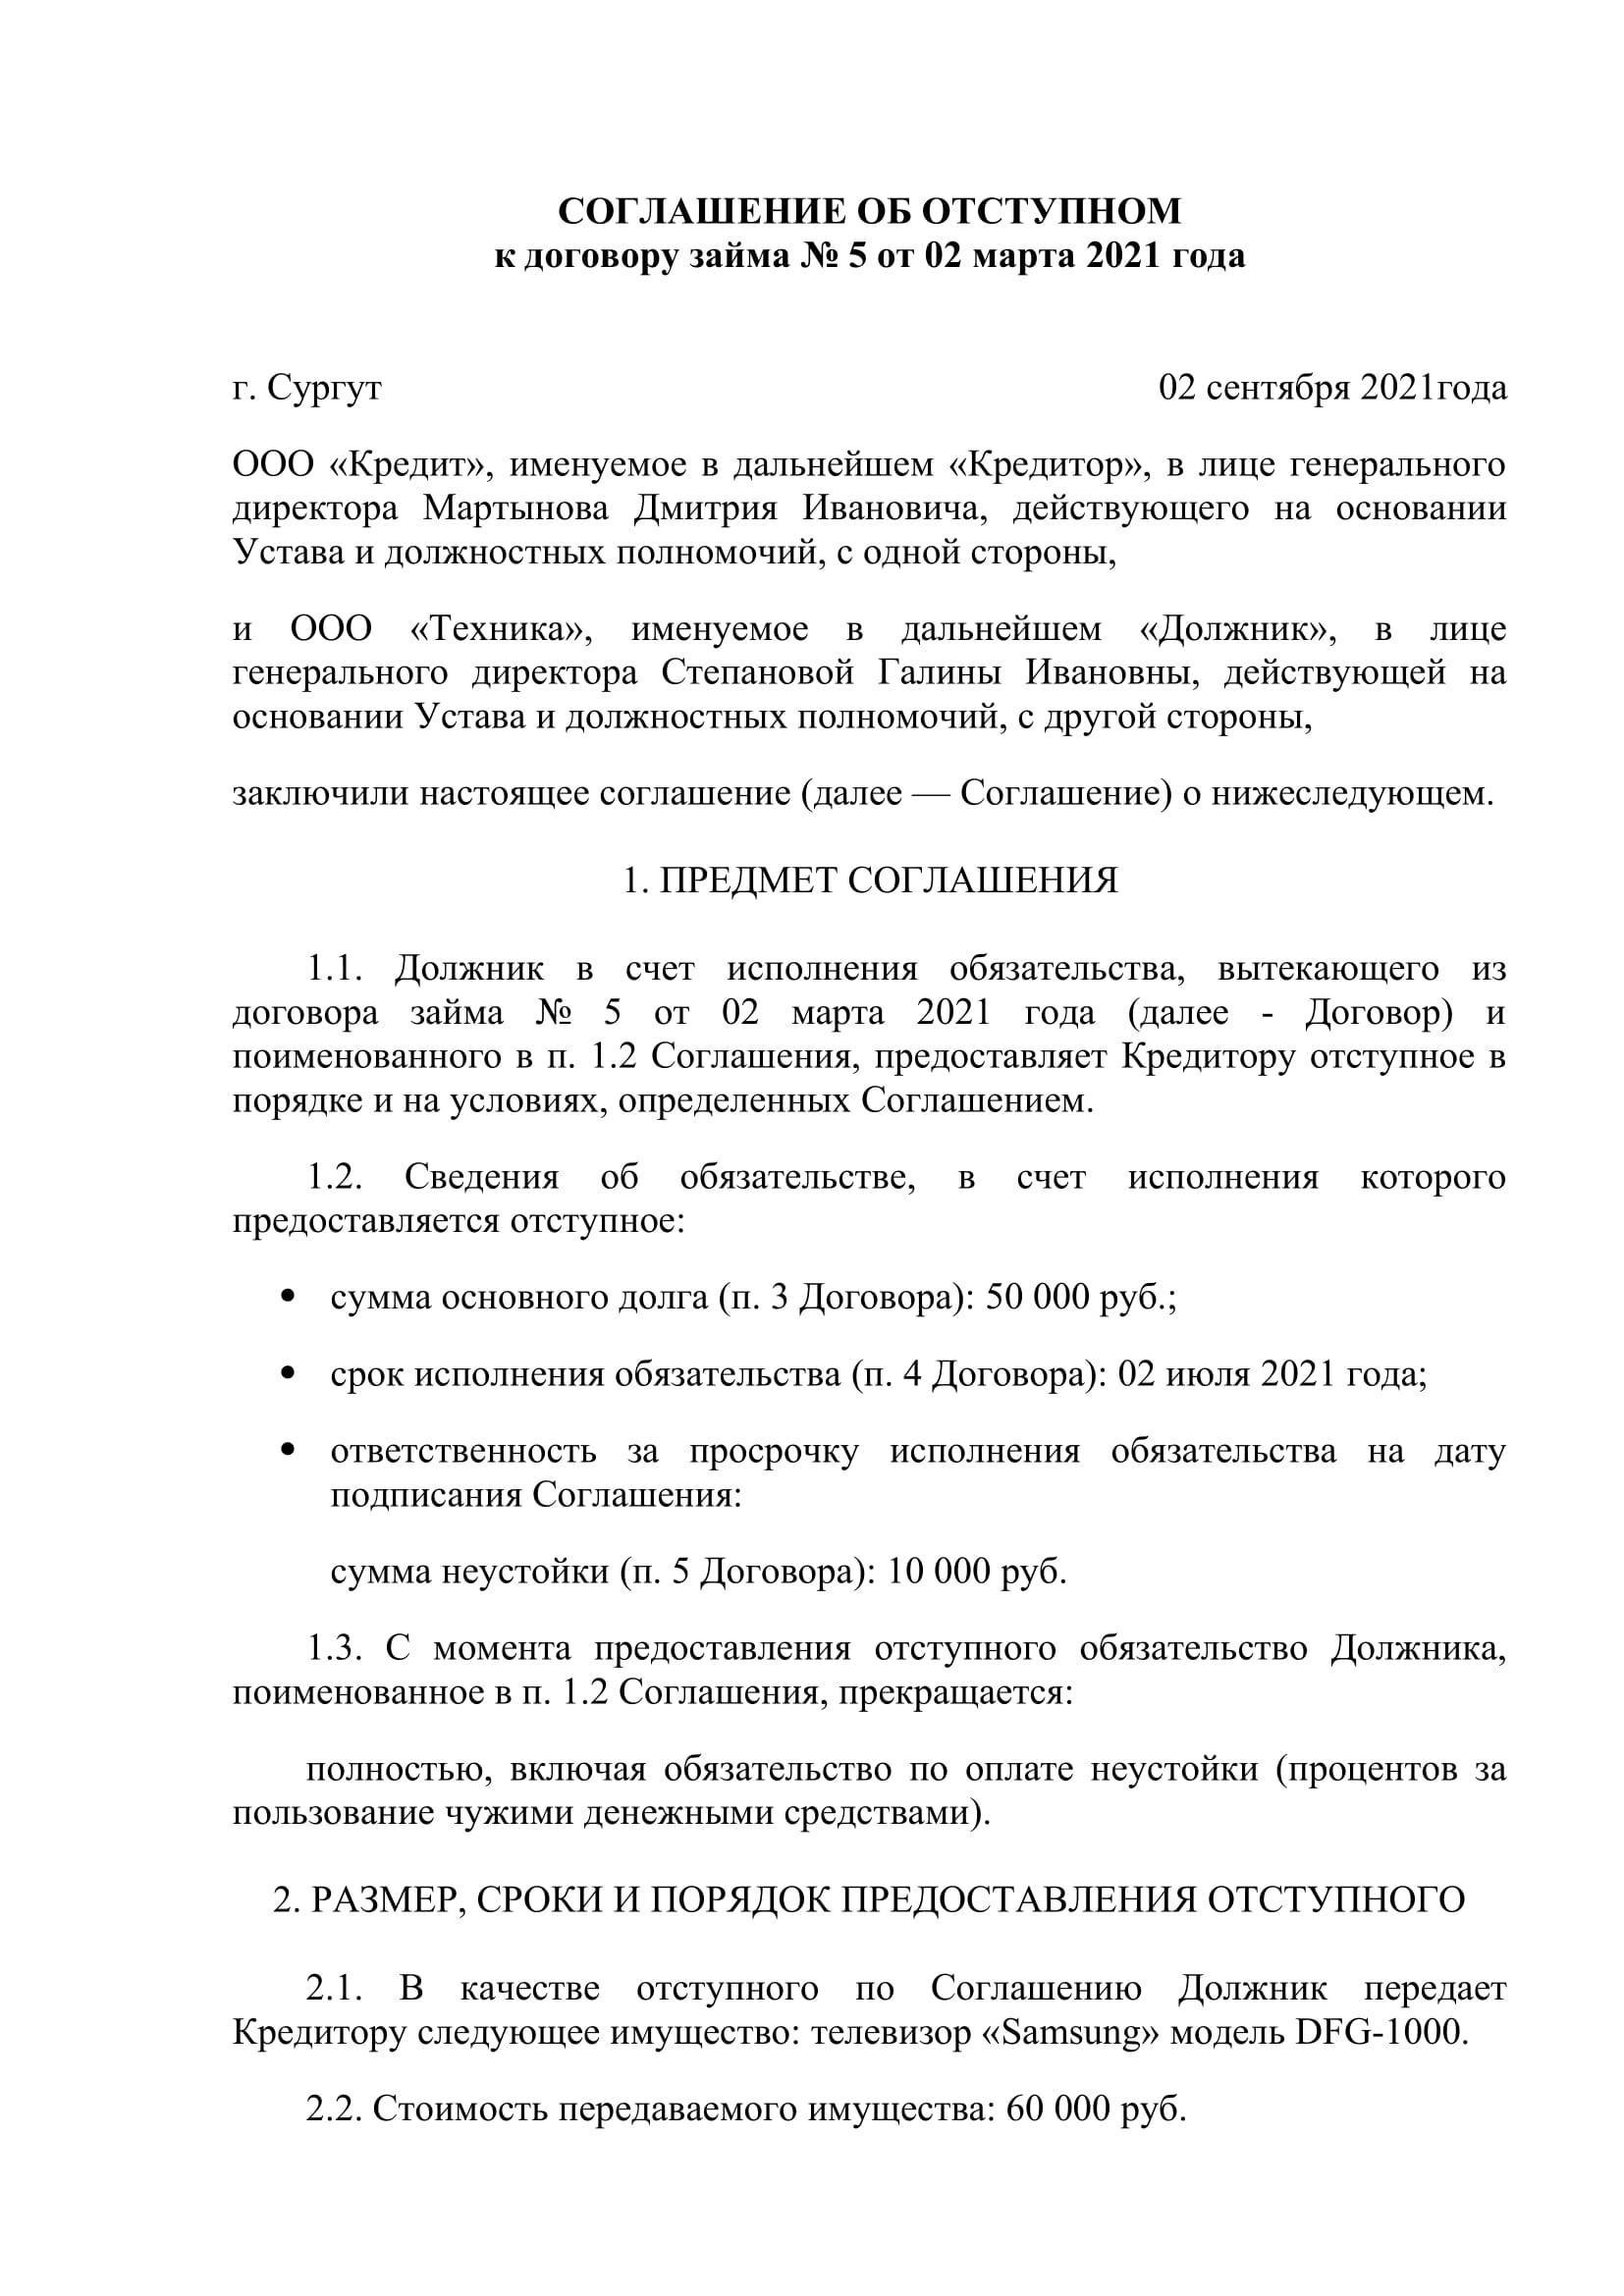 Соглашение об отступном: образец :: syl.ru